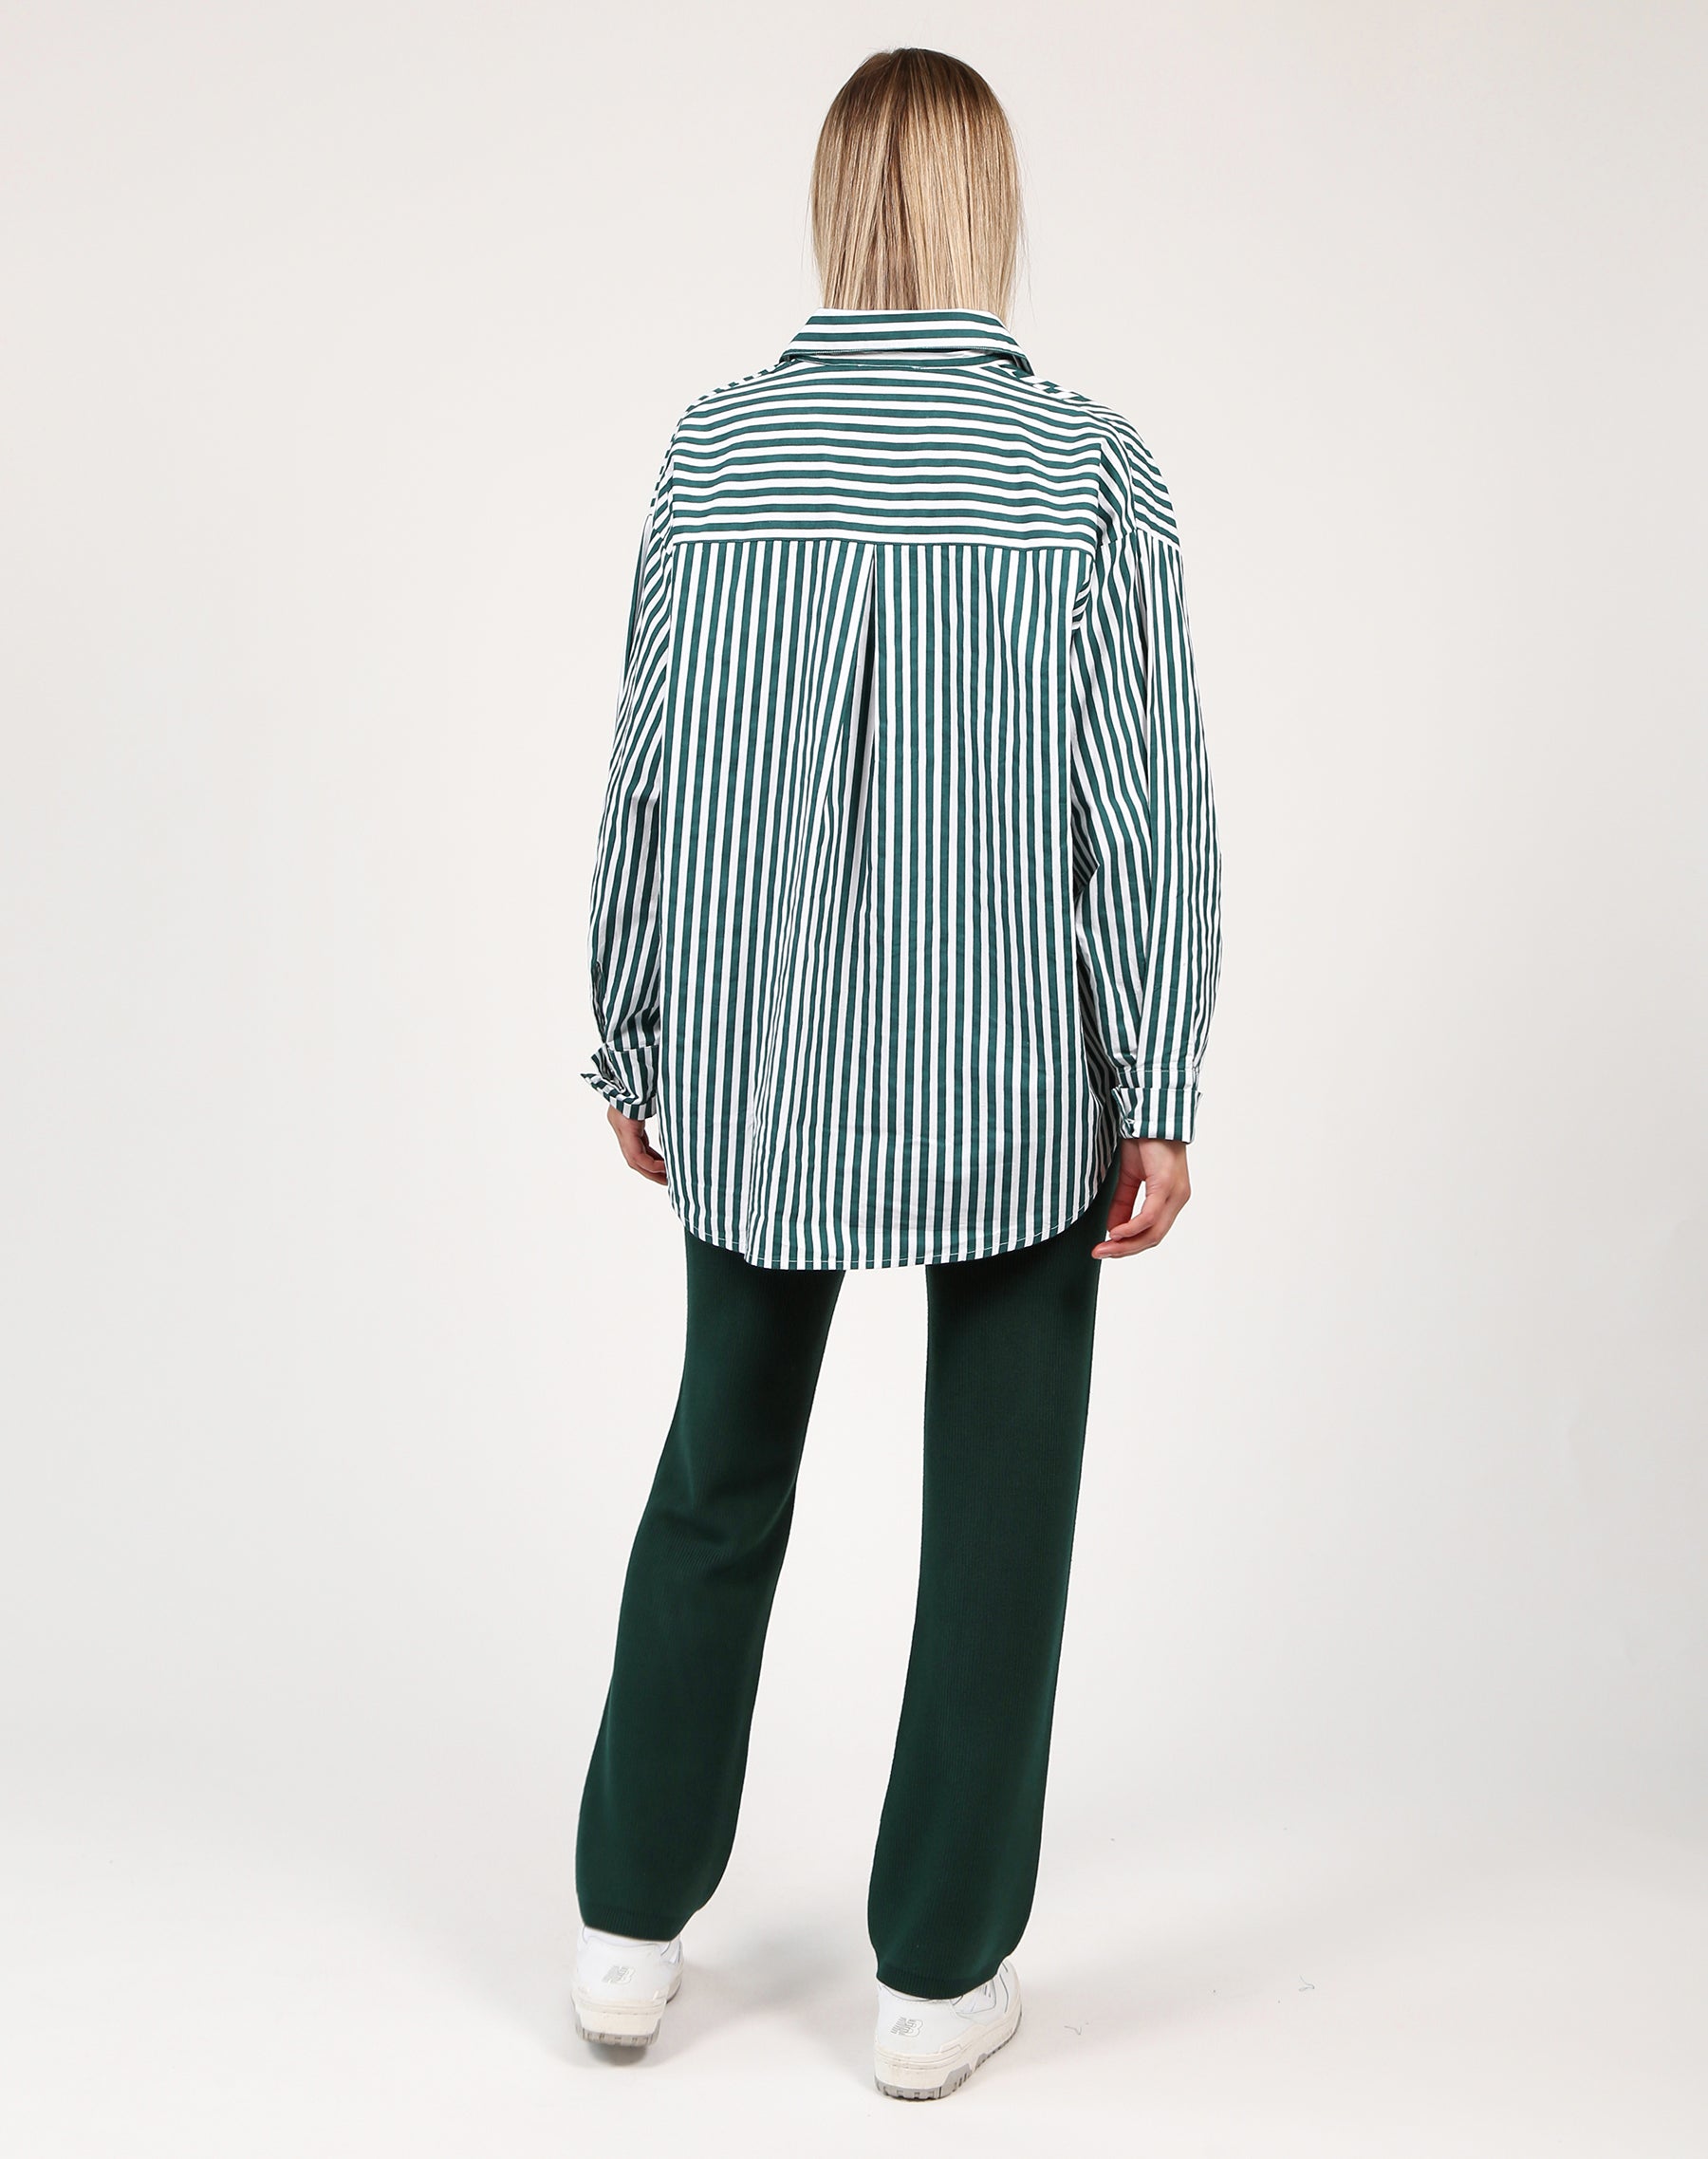 Striped Button Up Shirt | Emerald